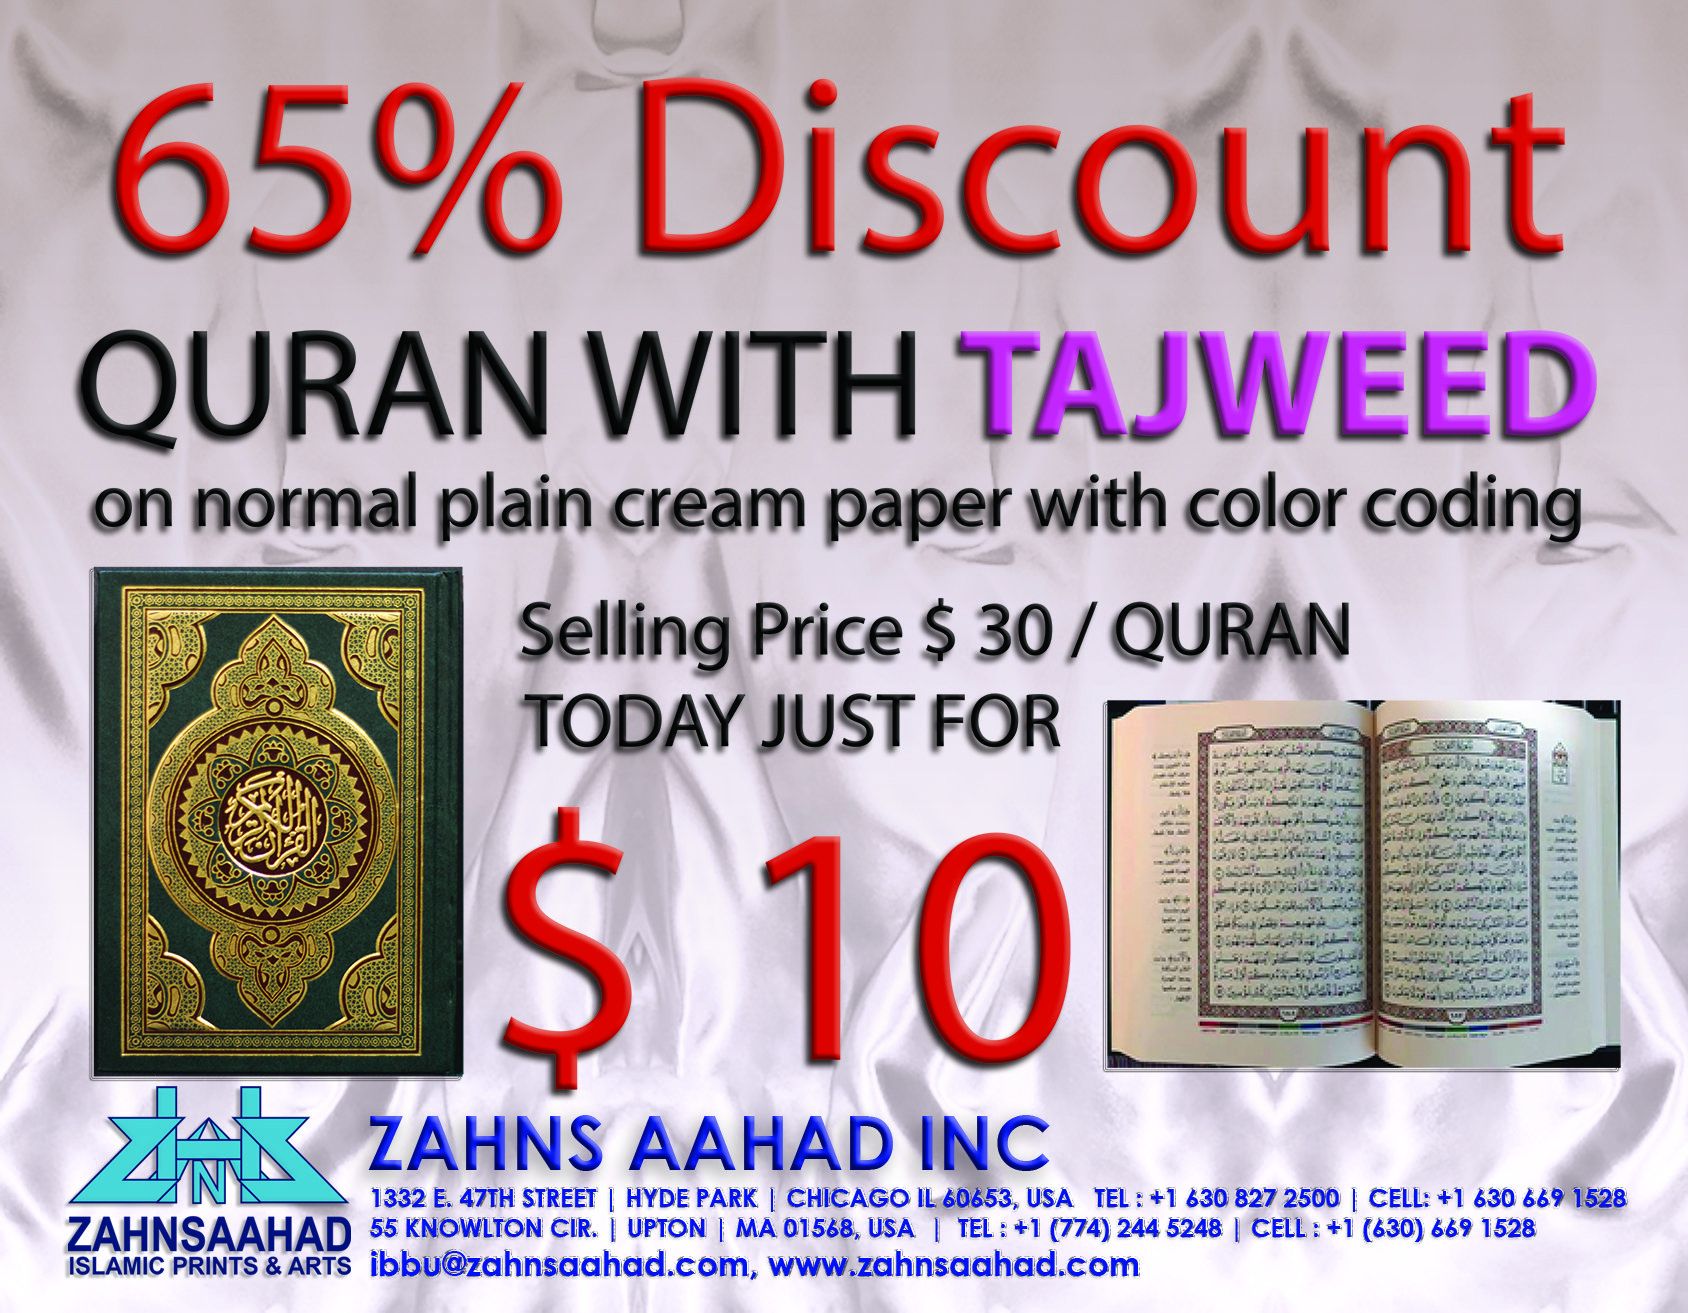 Zahnsaahad Discount on Quran